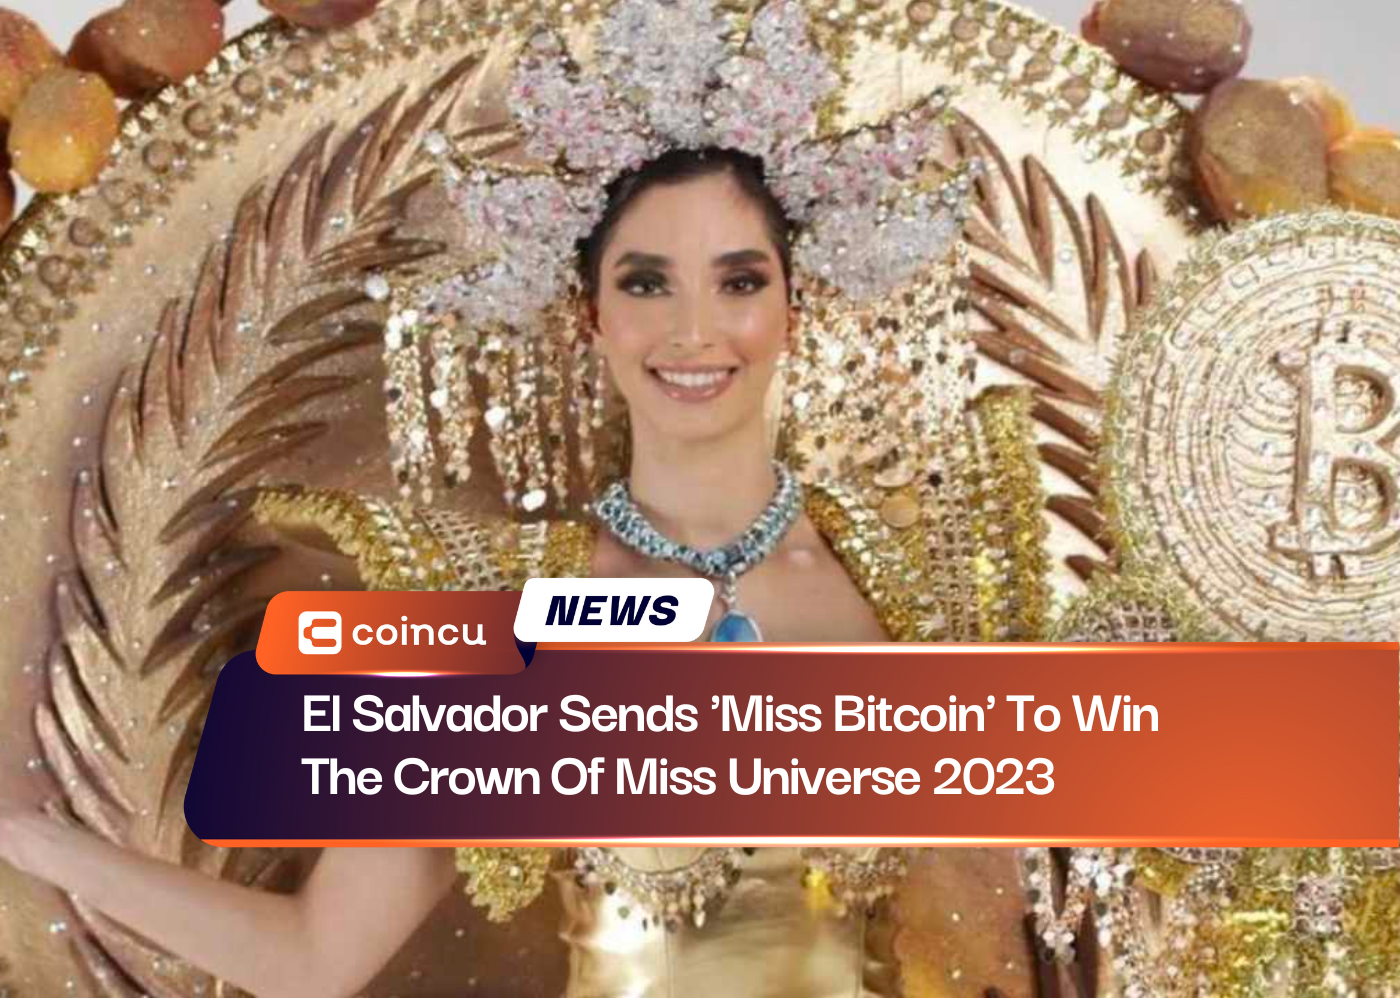 El Salvador cử ‘Miss Bitcoin’ để giành vương miện Hoa hậu Hoàn vũ 2023